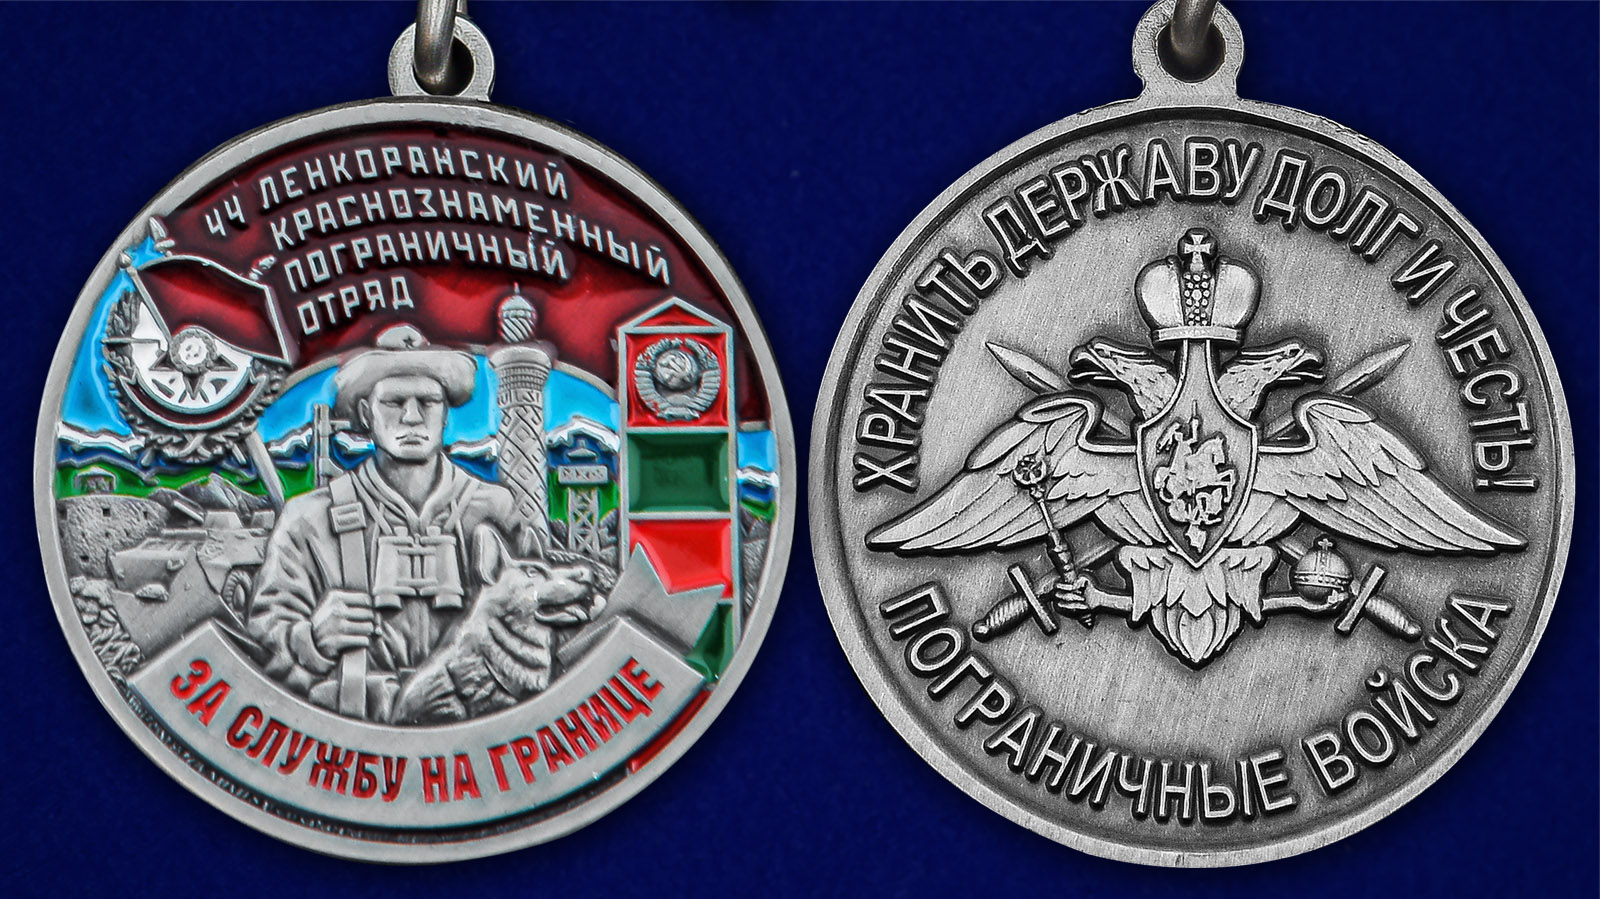 Описание медали "За службу в Ленкоранском пограничном отряде" - аверс и реверс